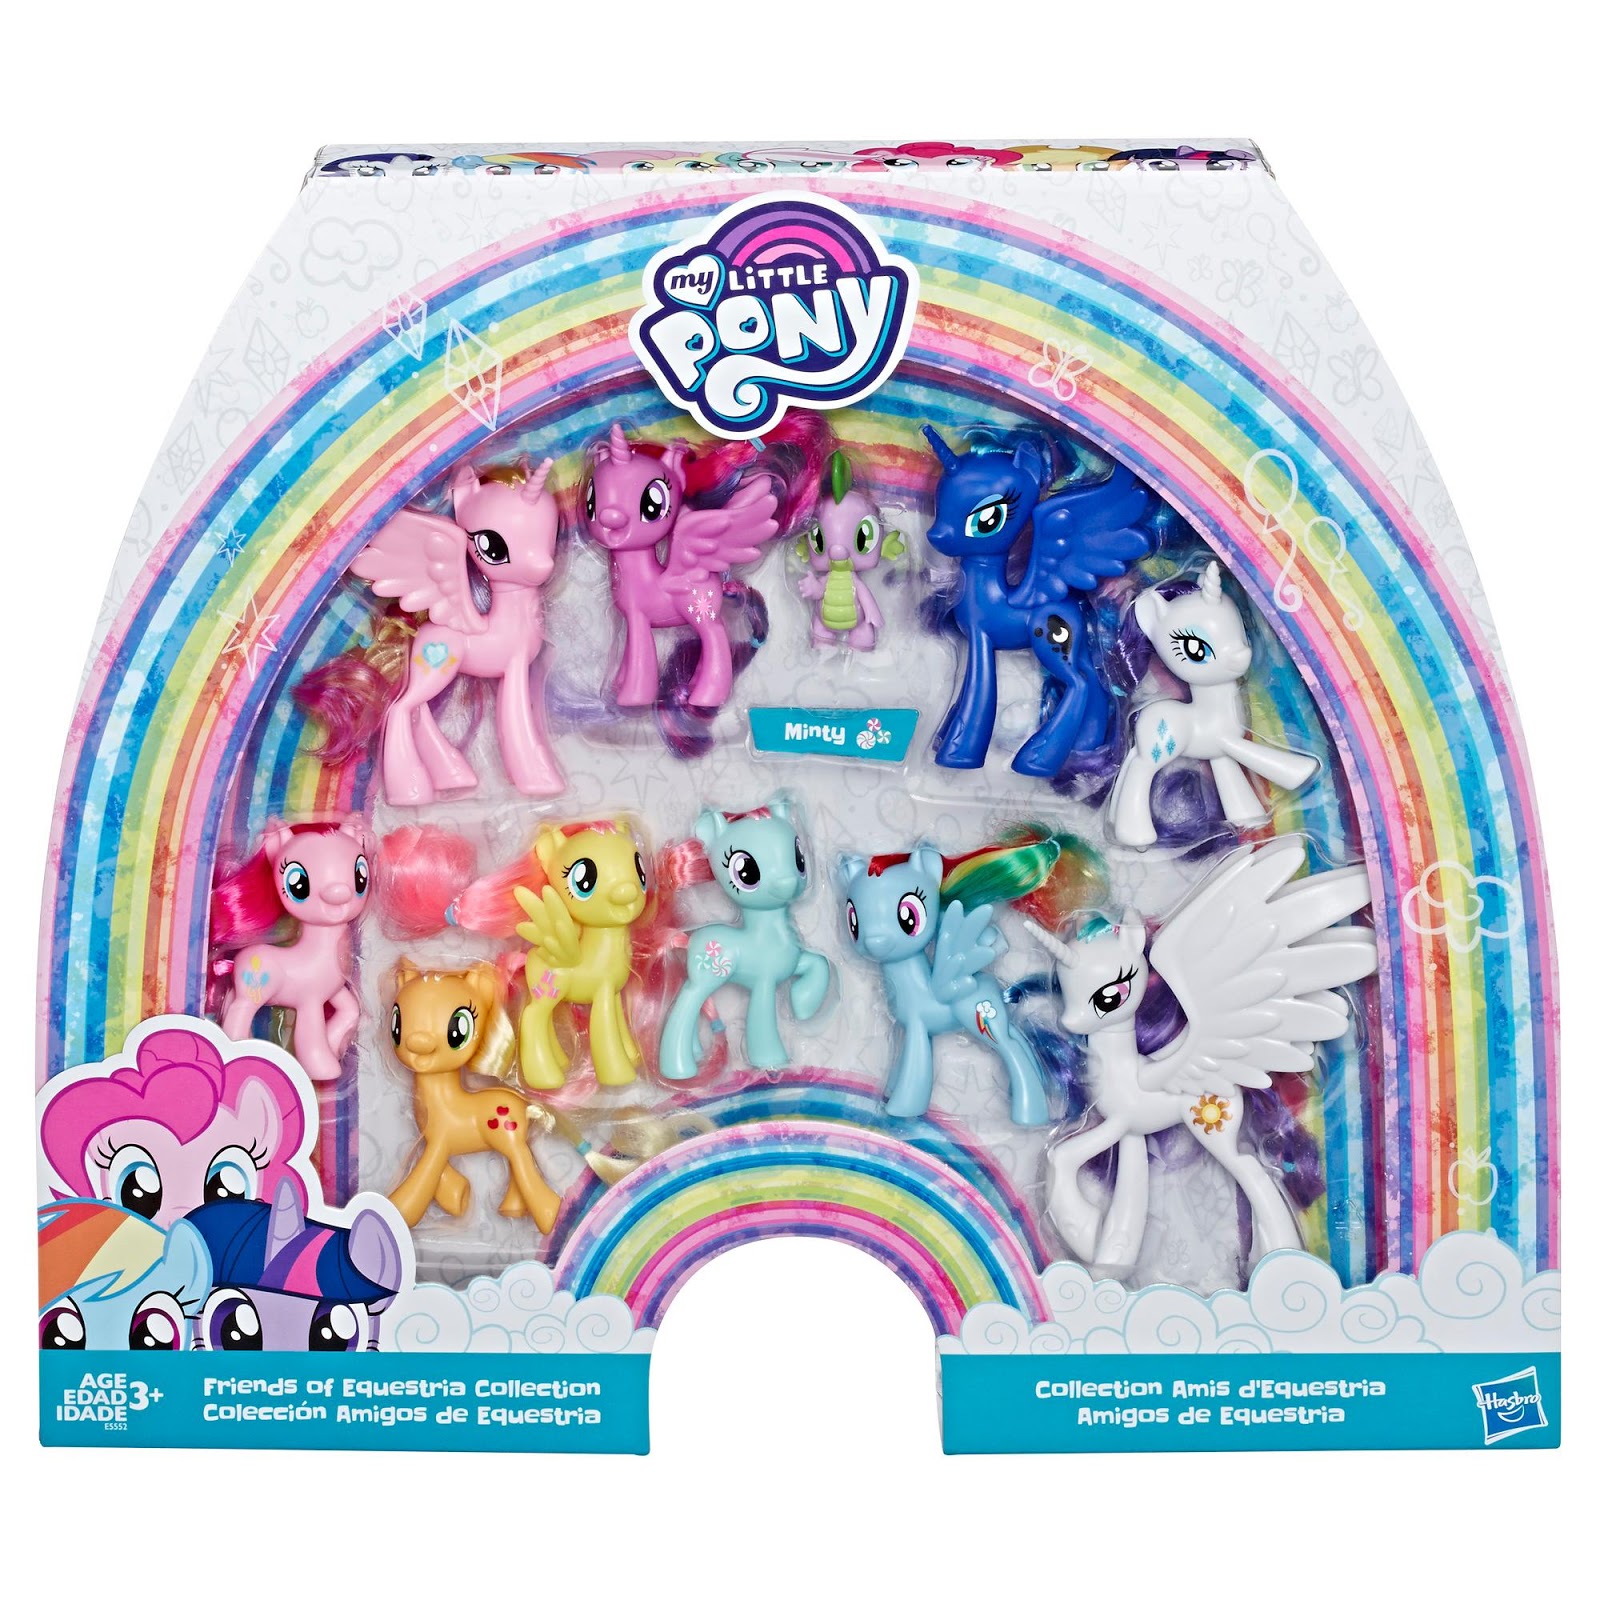 EqD April Fools - New My Little Pony Toys! by Blueshift2k5 on DeviantArt